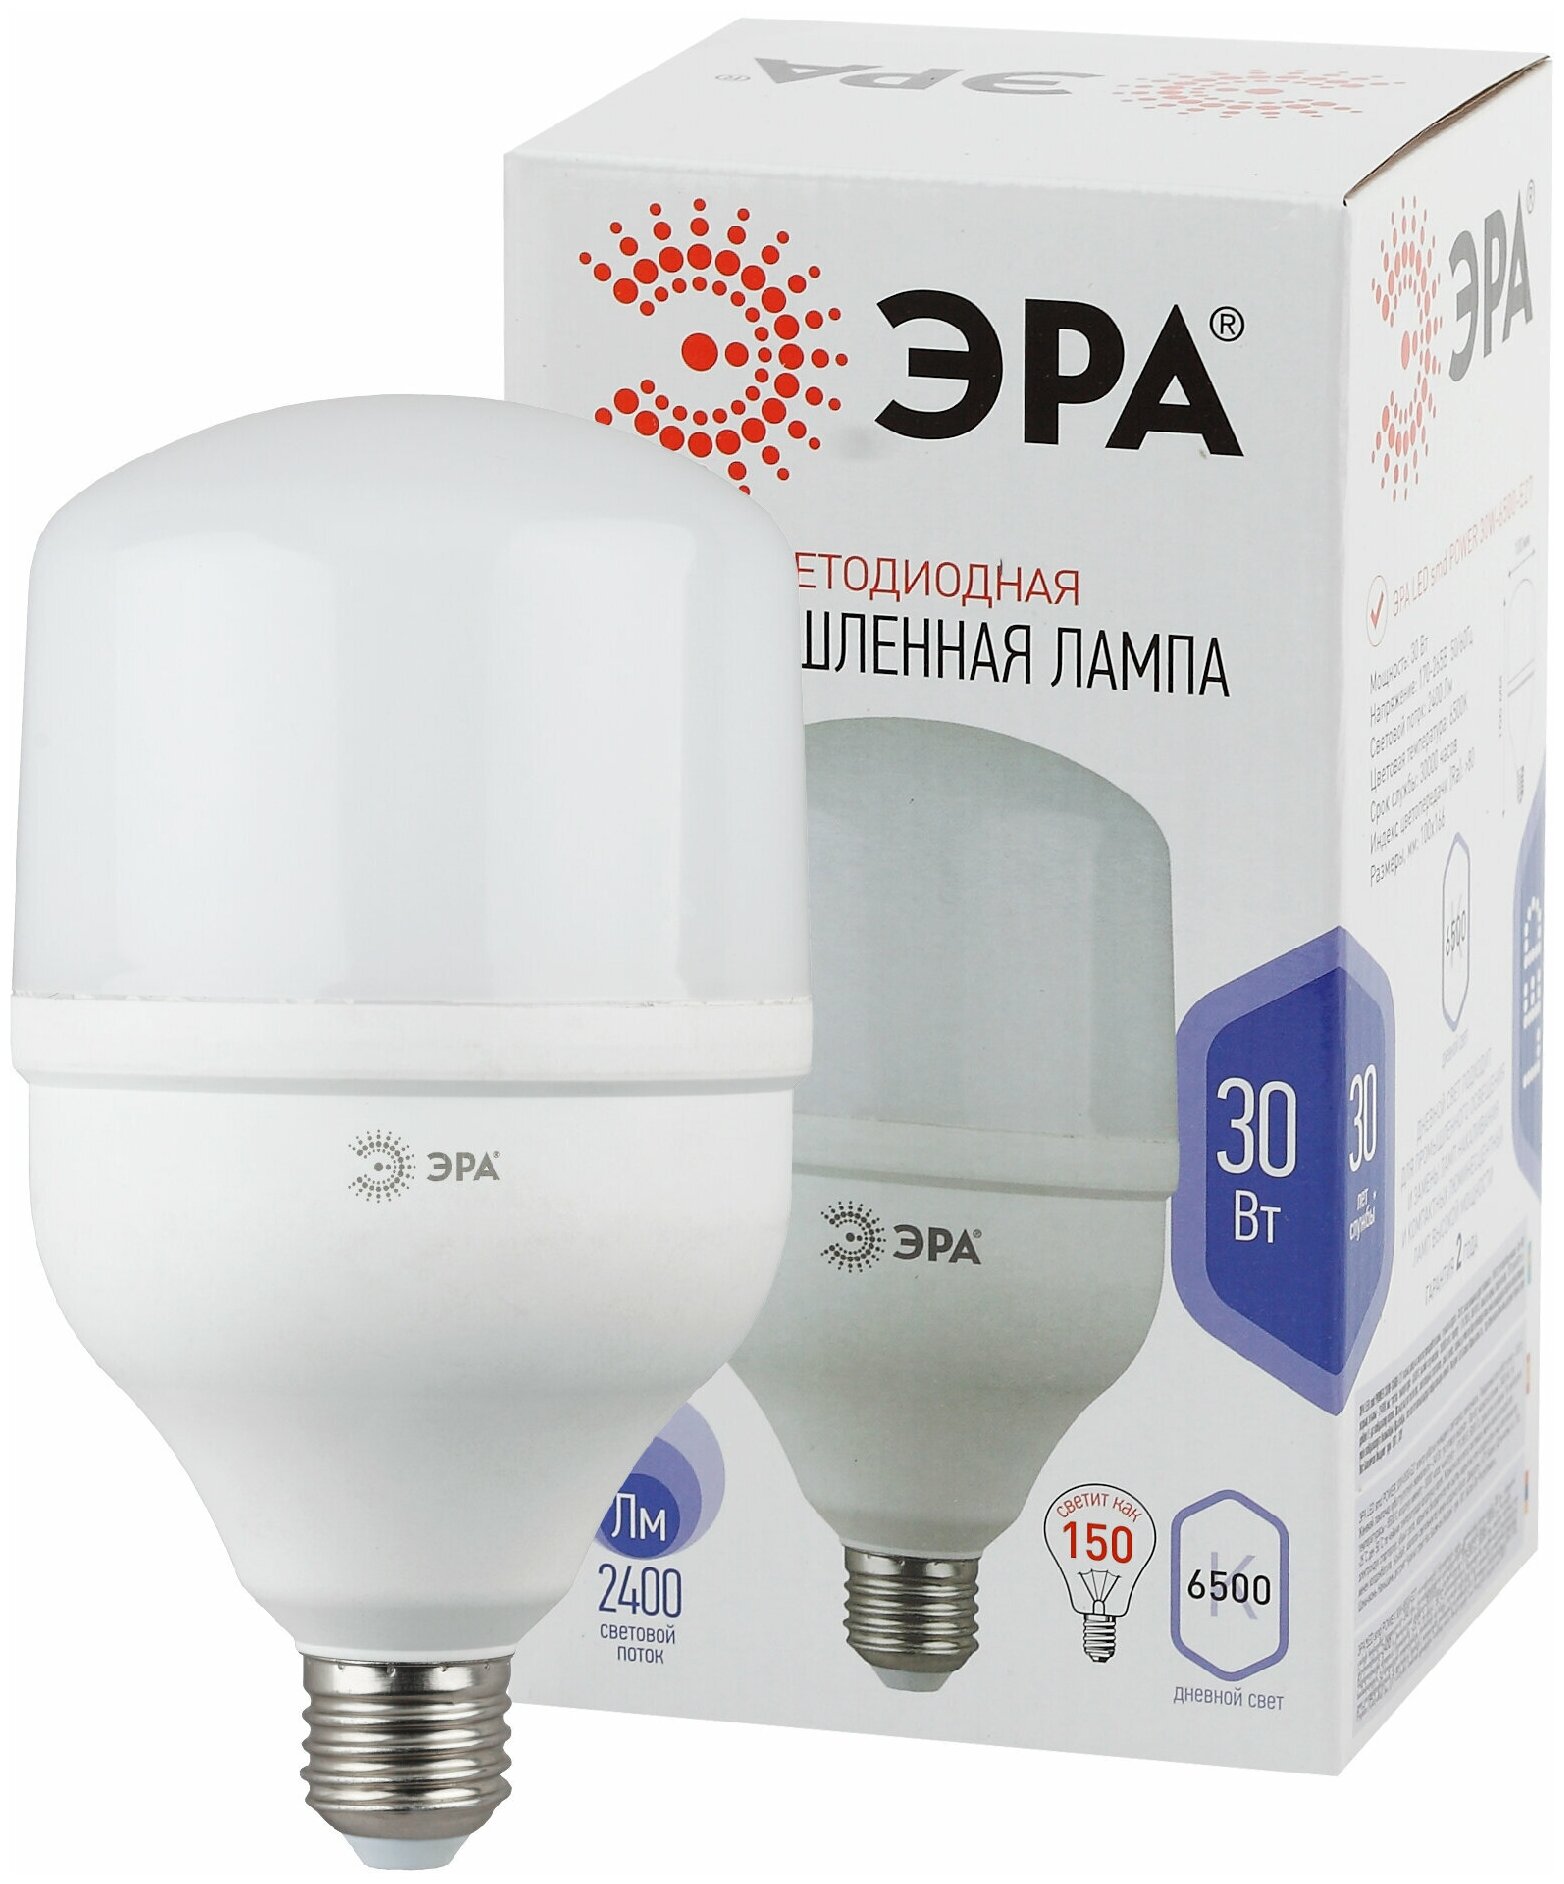 Эра Лампа светодиодная высокомощная POWER 30W-6500-E27 2400лм ЭРА Б0027004